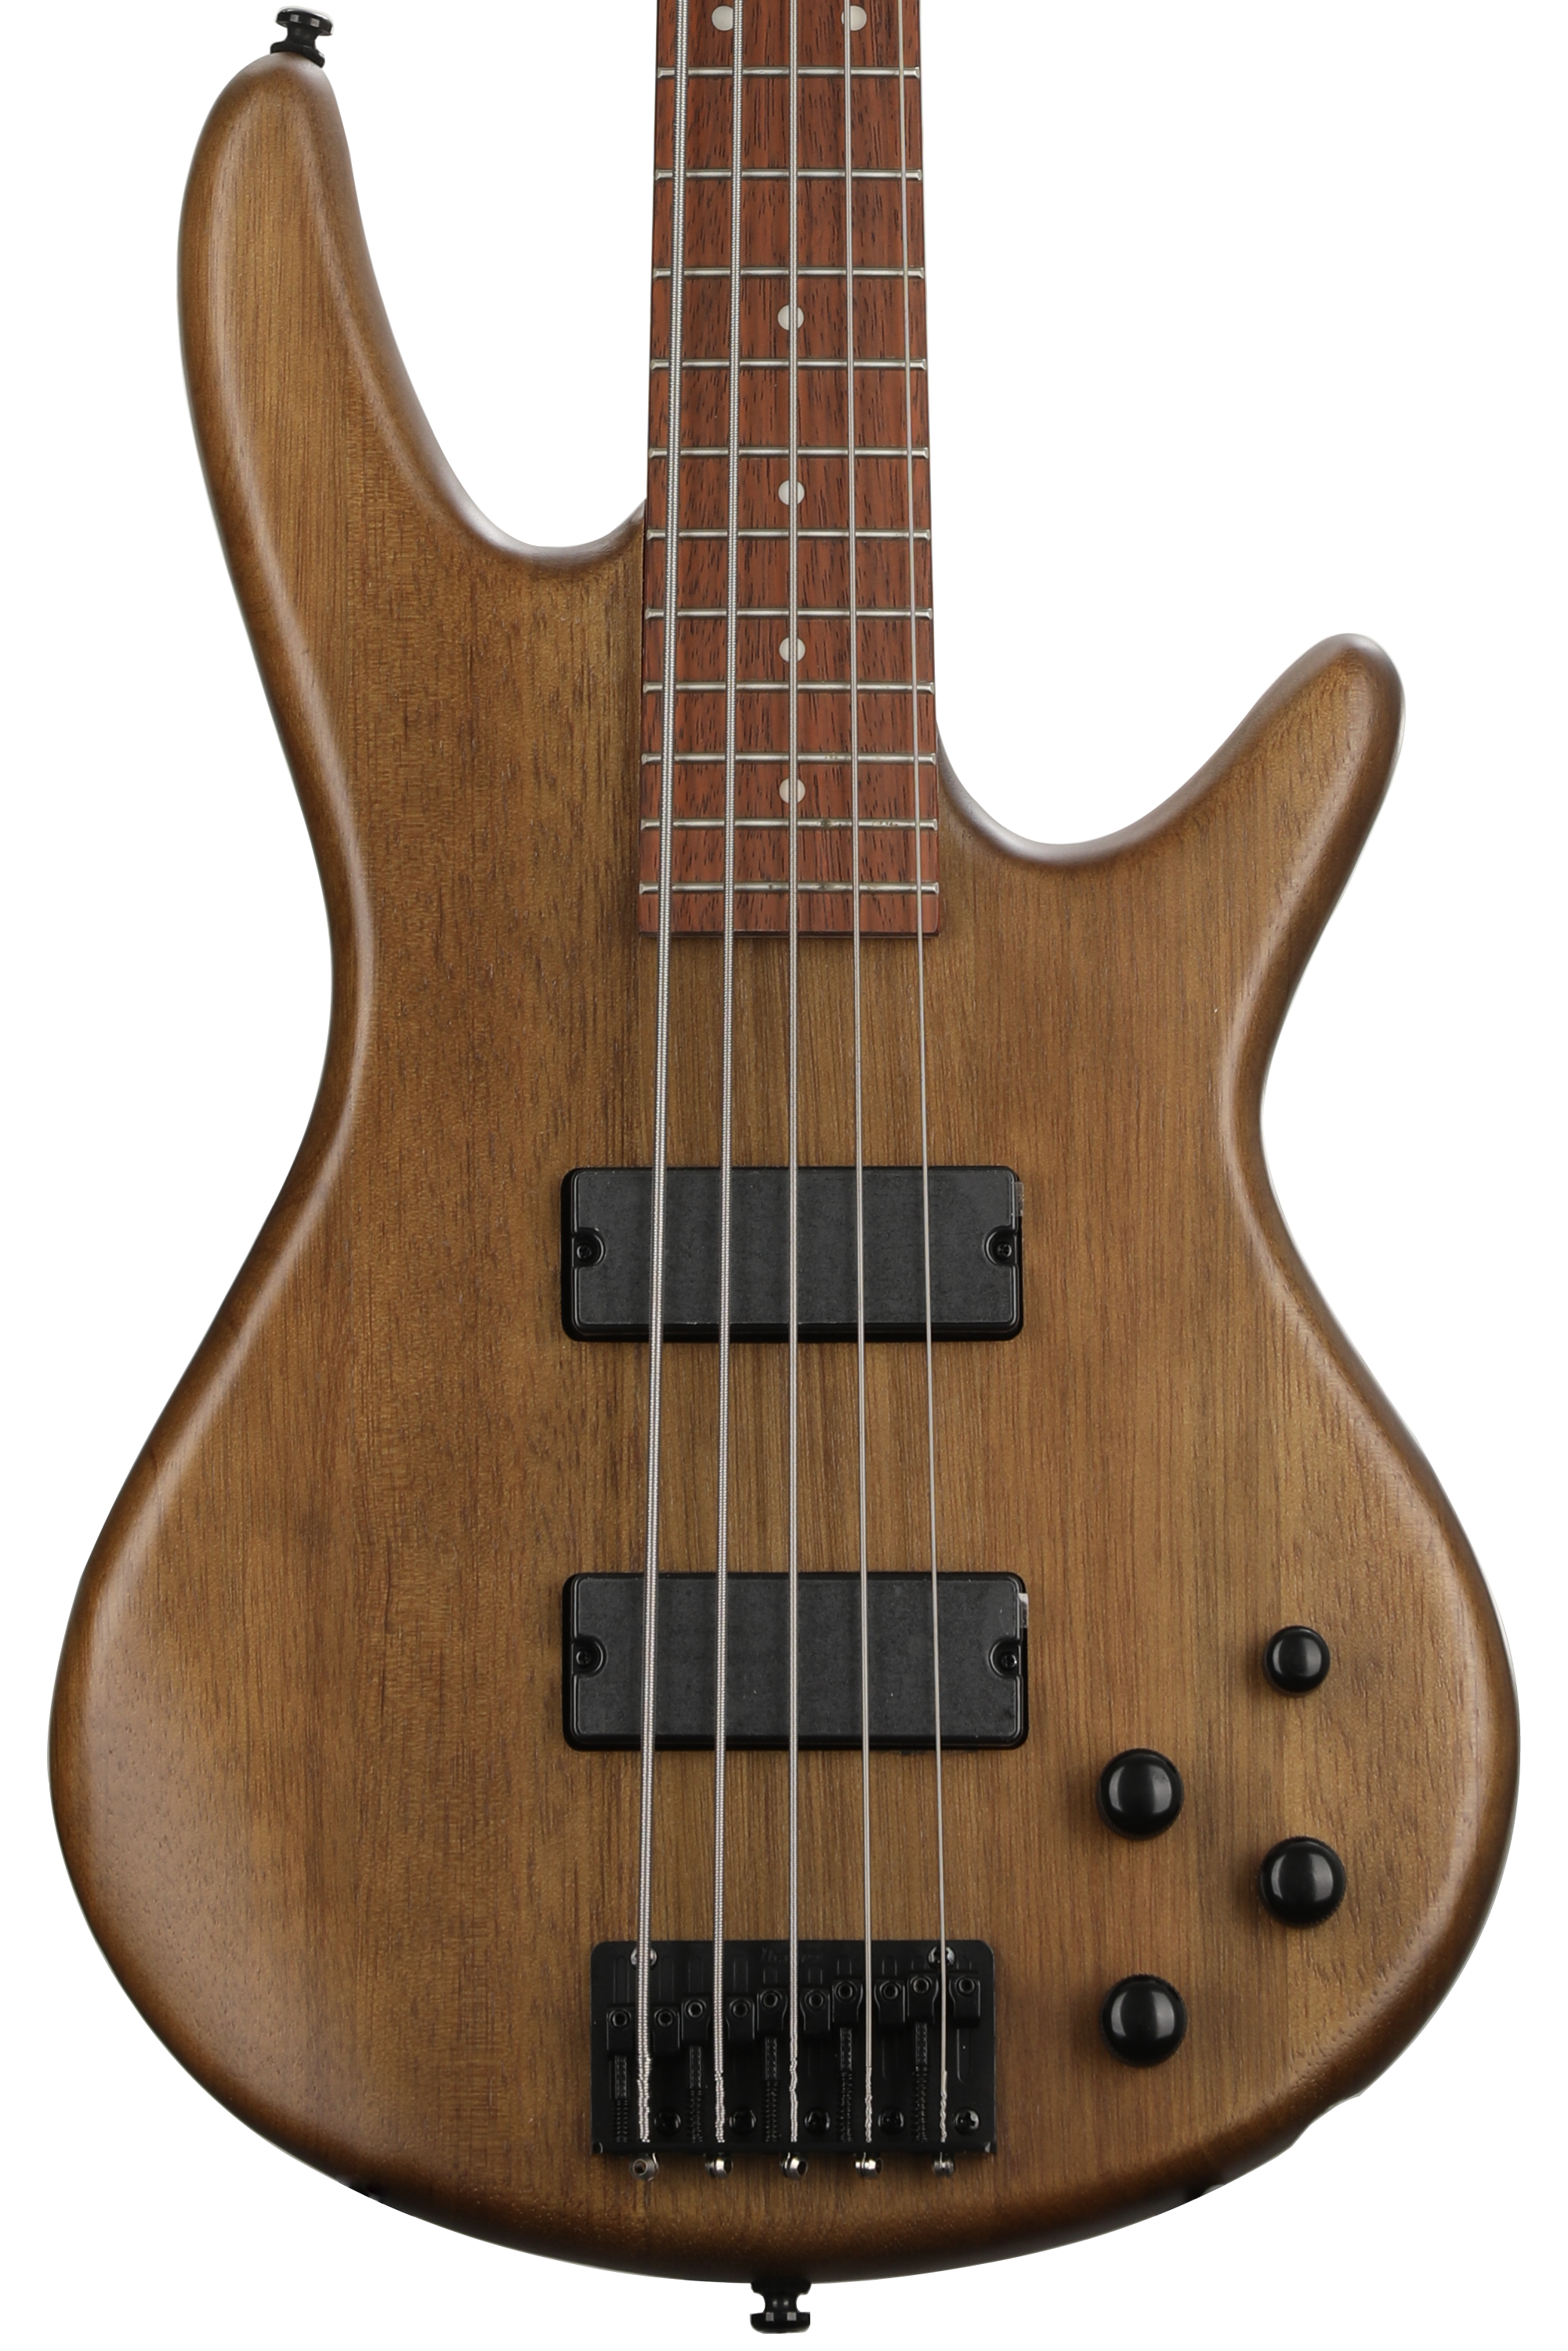 Ibanez Gio GSR205B 5-string Bass Guitar - Walnut Flat